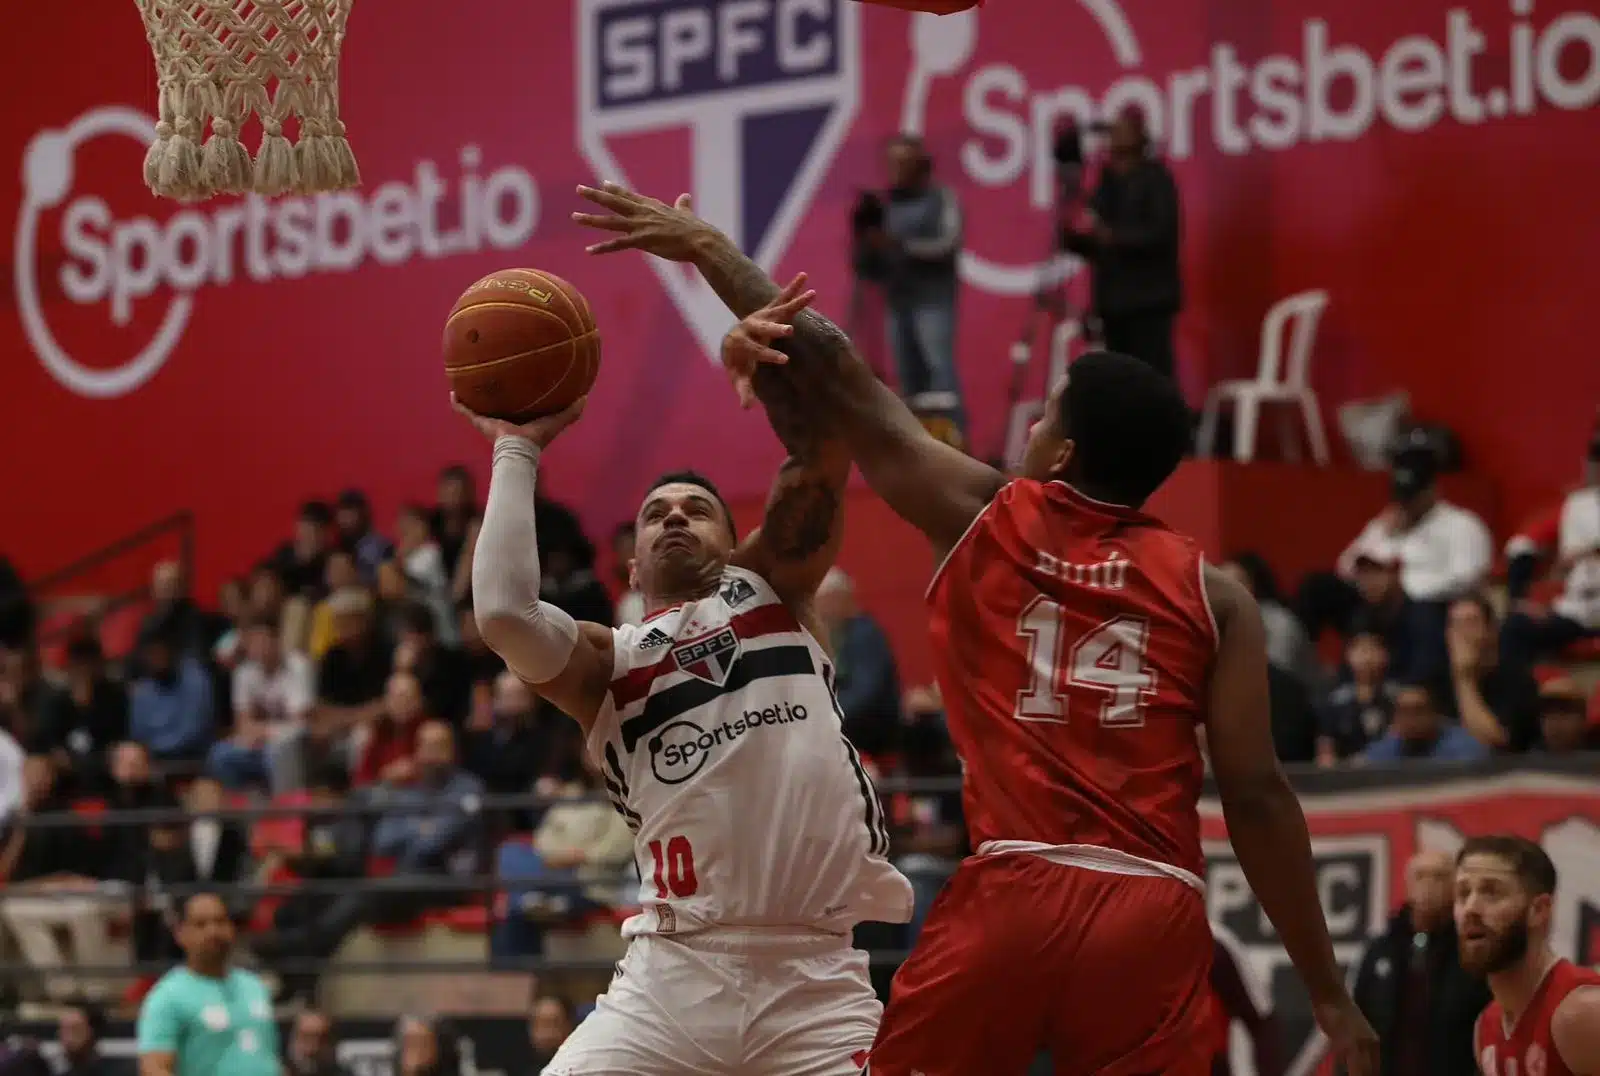 Após duas semanas sem jogos, São Paulo recebe Paulistano pelo estadual de basquete